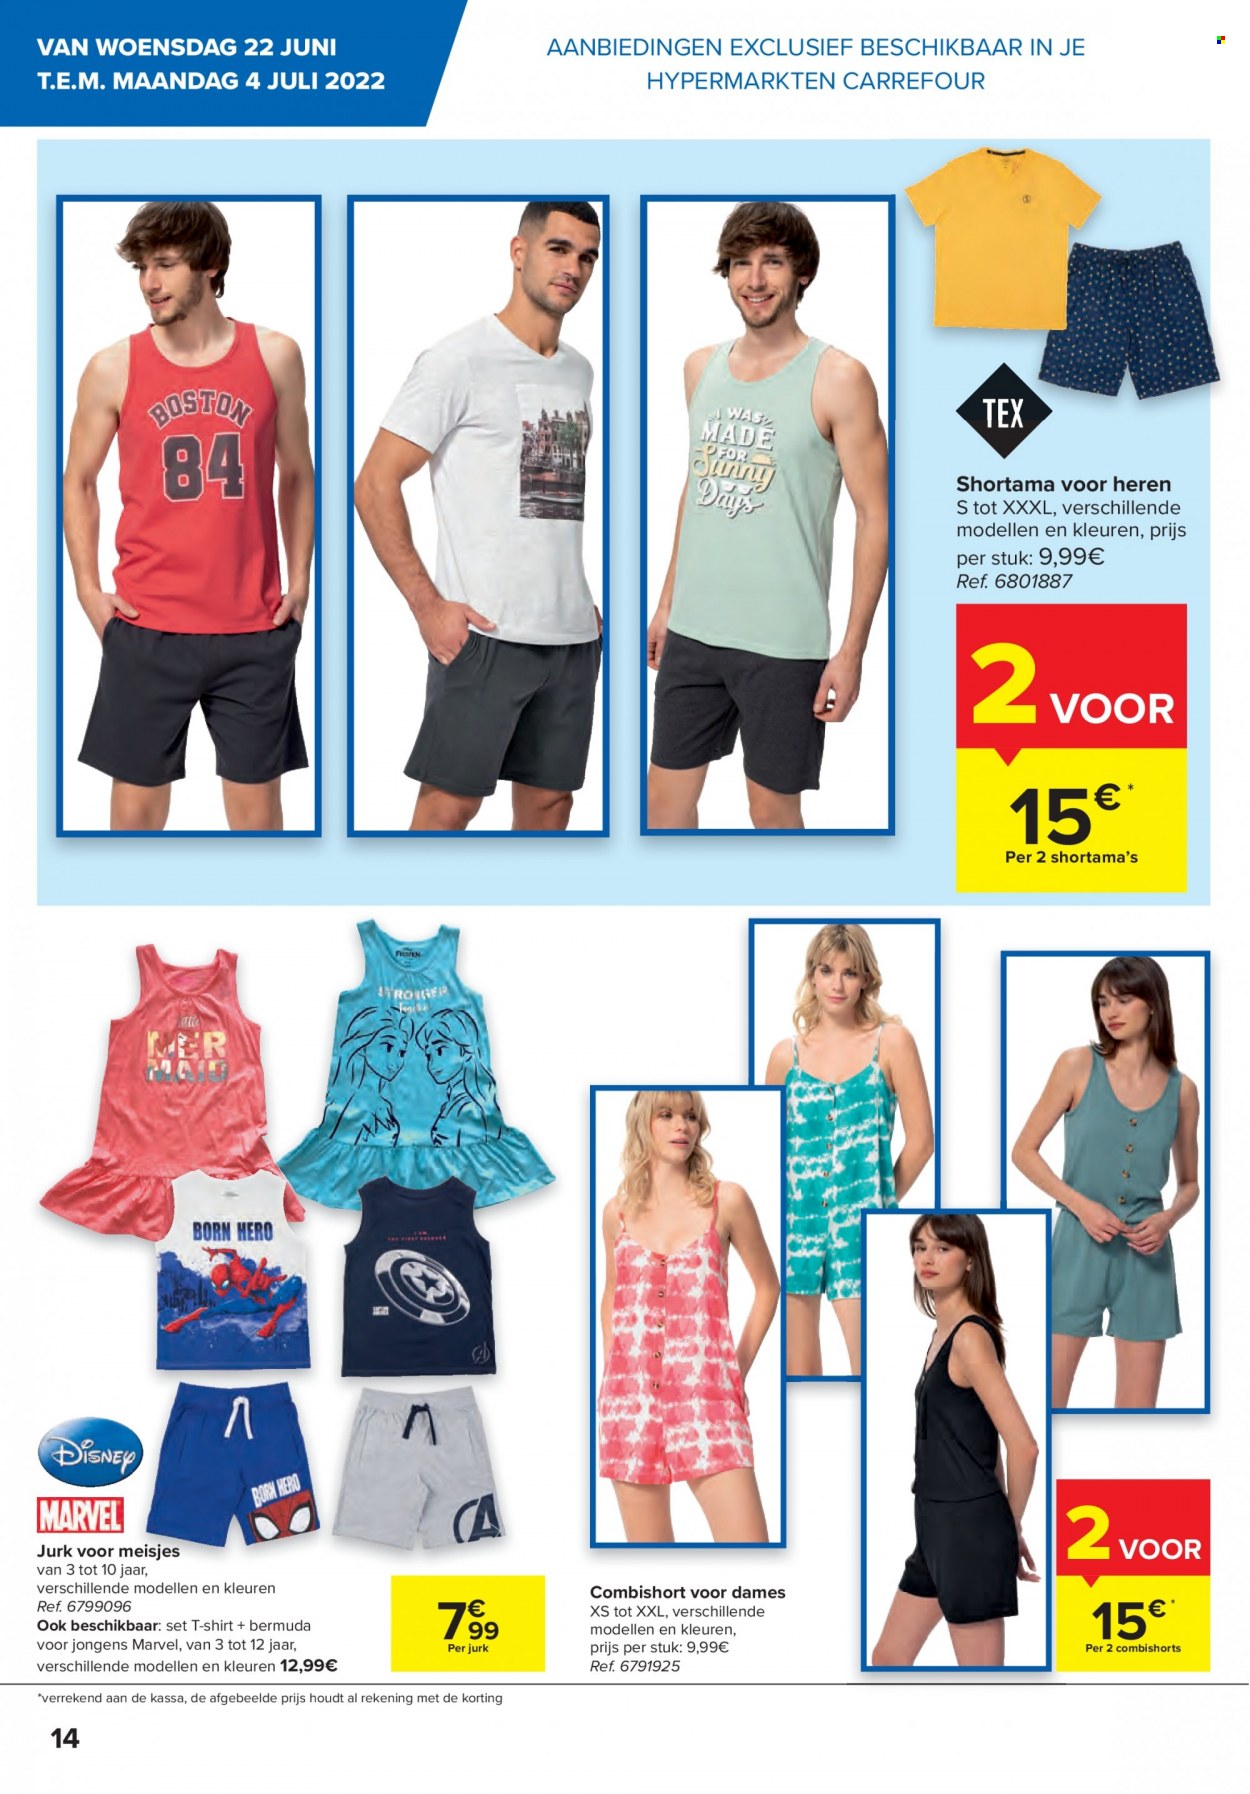 thumbnail - Carrefour hypermarkt-aanbieding - 22/06/2022 - 04/07/2022 -  producten in de aanbieding - Disney, jurk, shirt, t-shirt. Pagina 14.